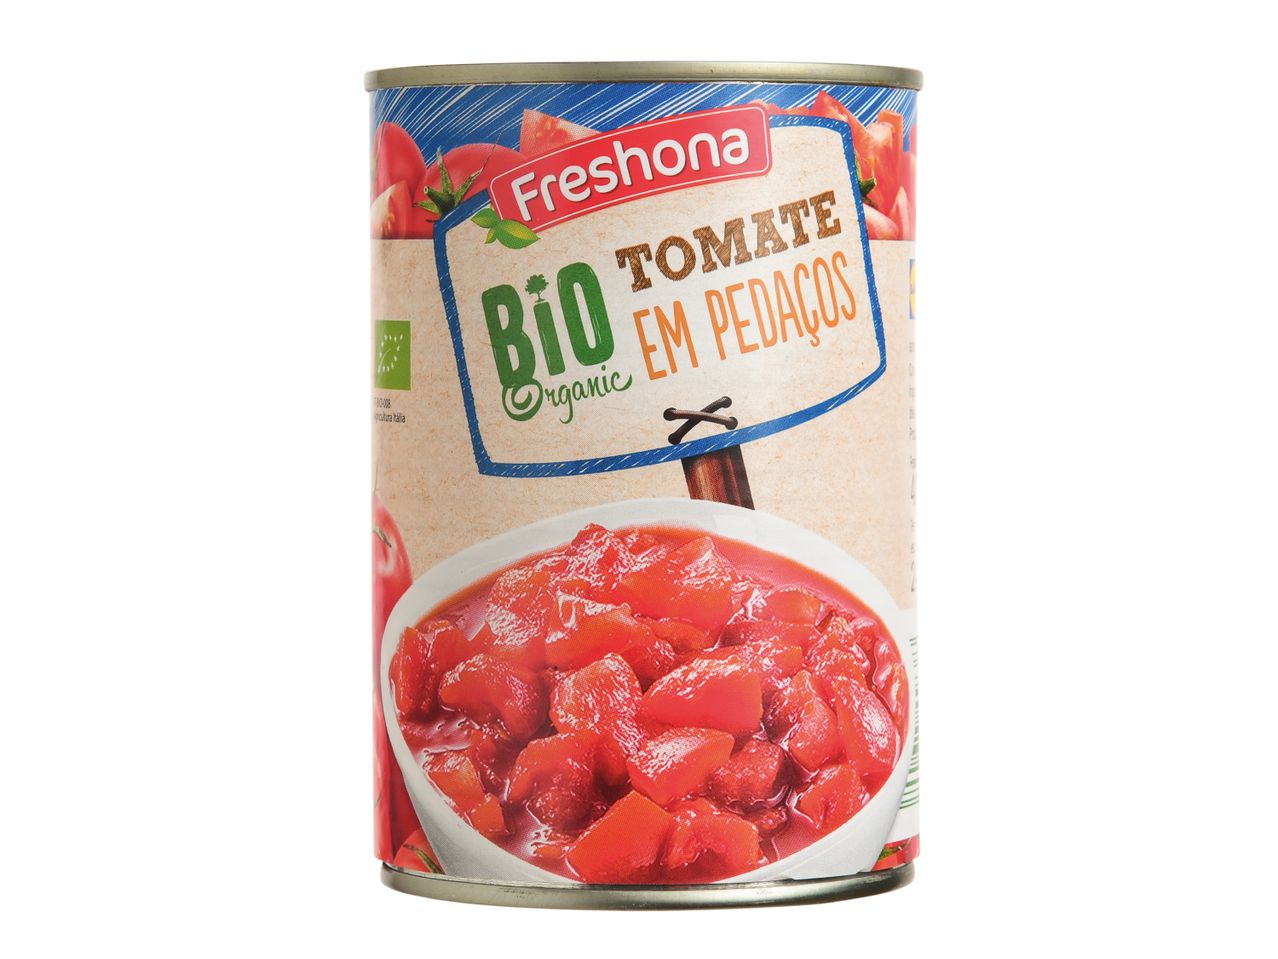 Ver empliada: Freshona® Tomate em Pedaços Bio - Imagem 1